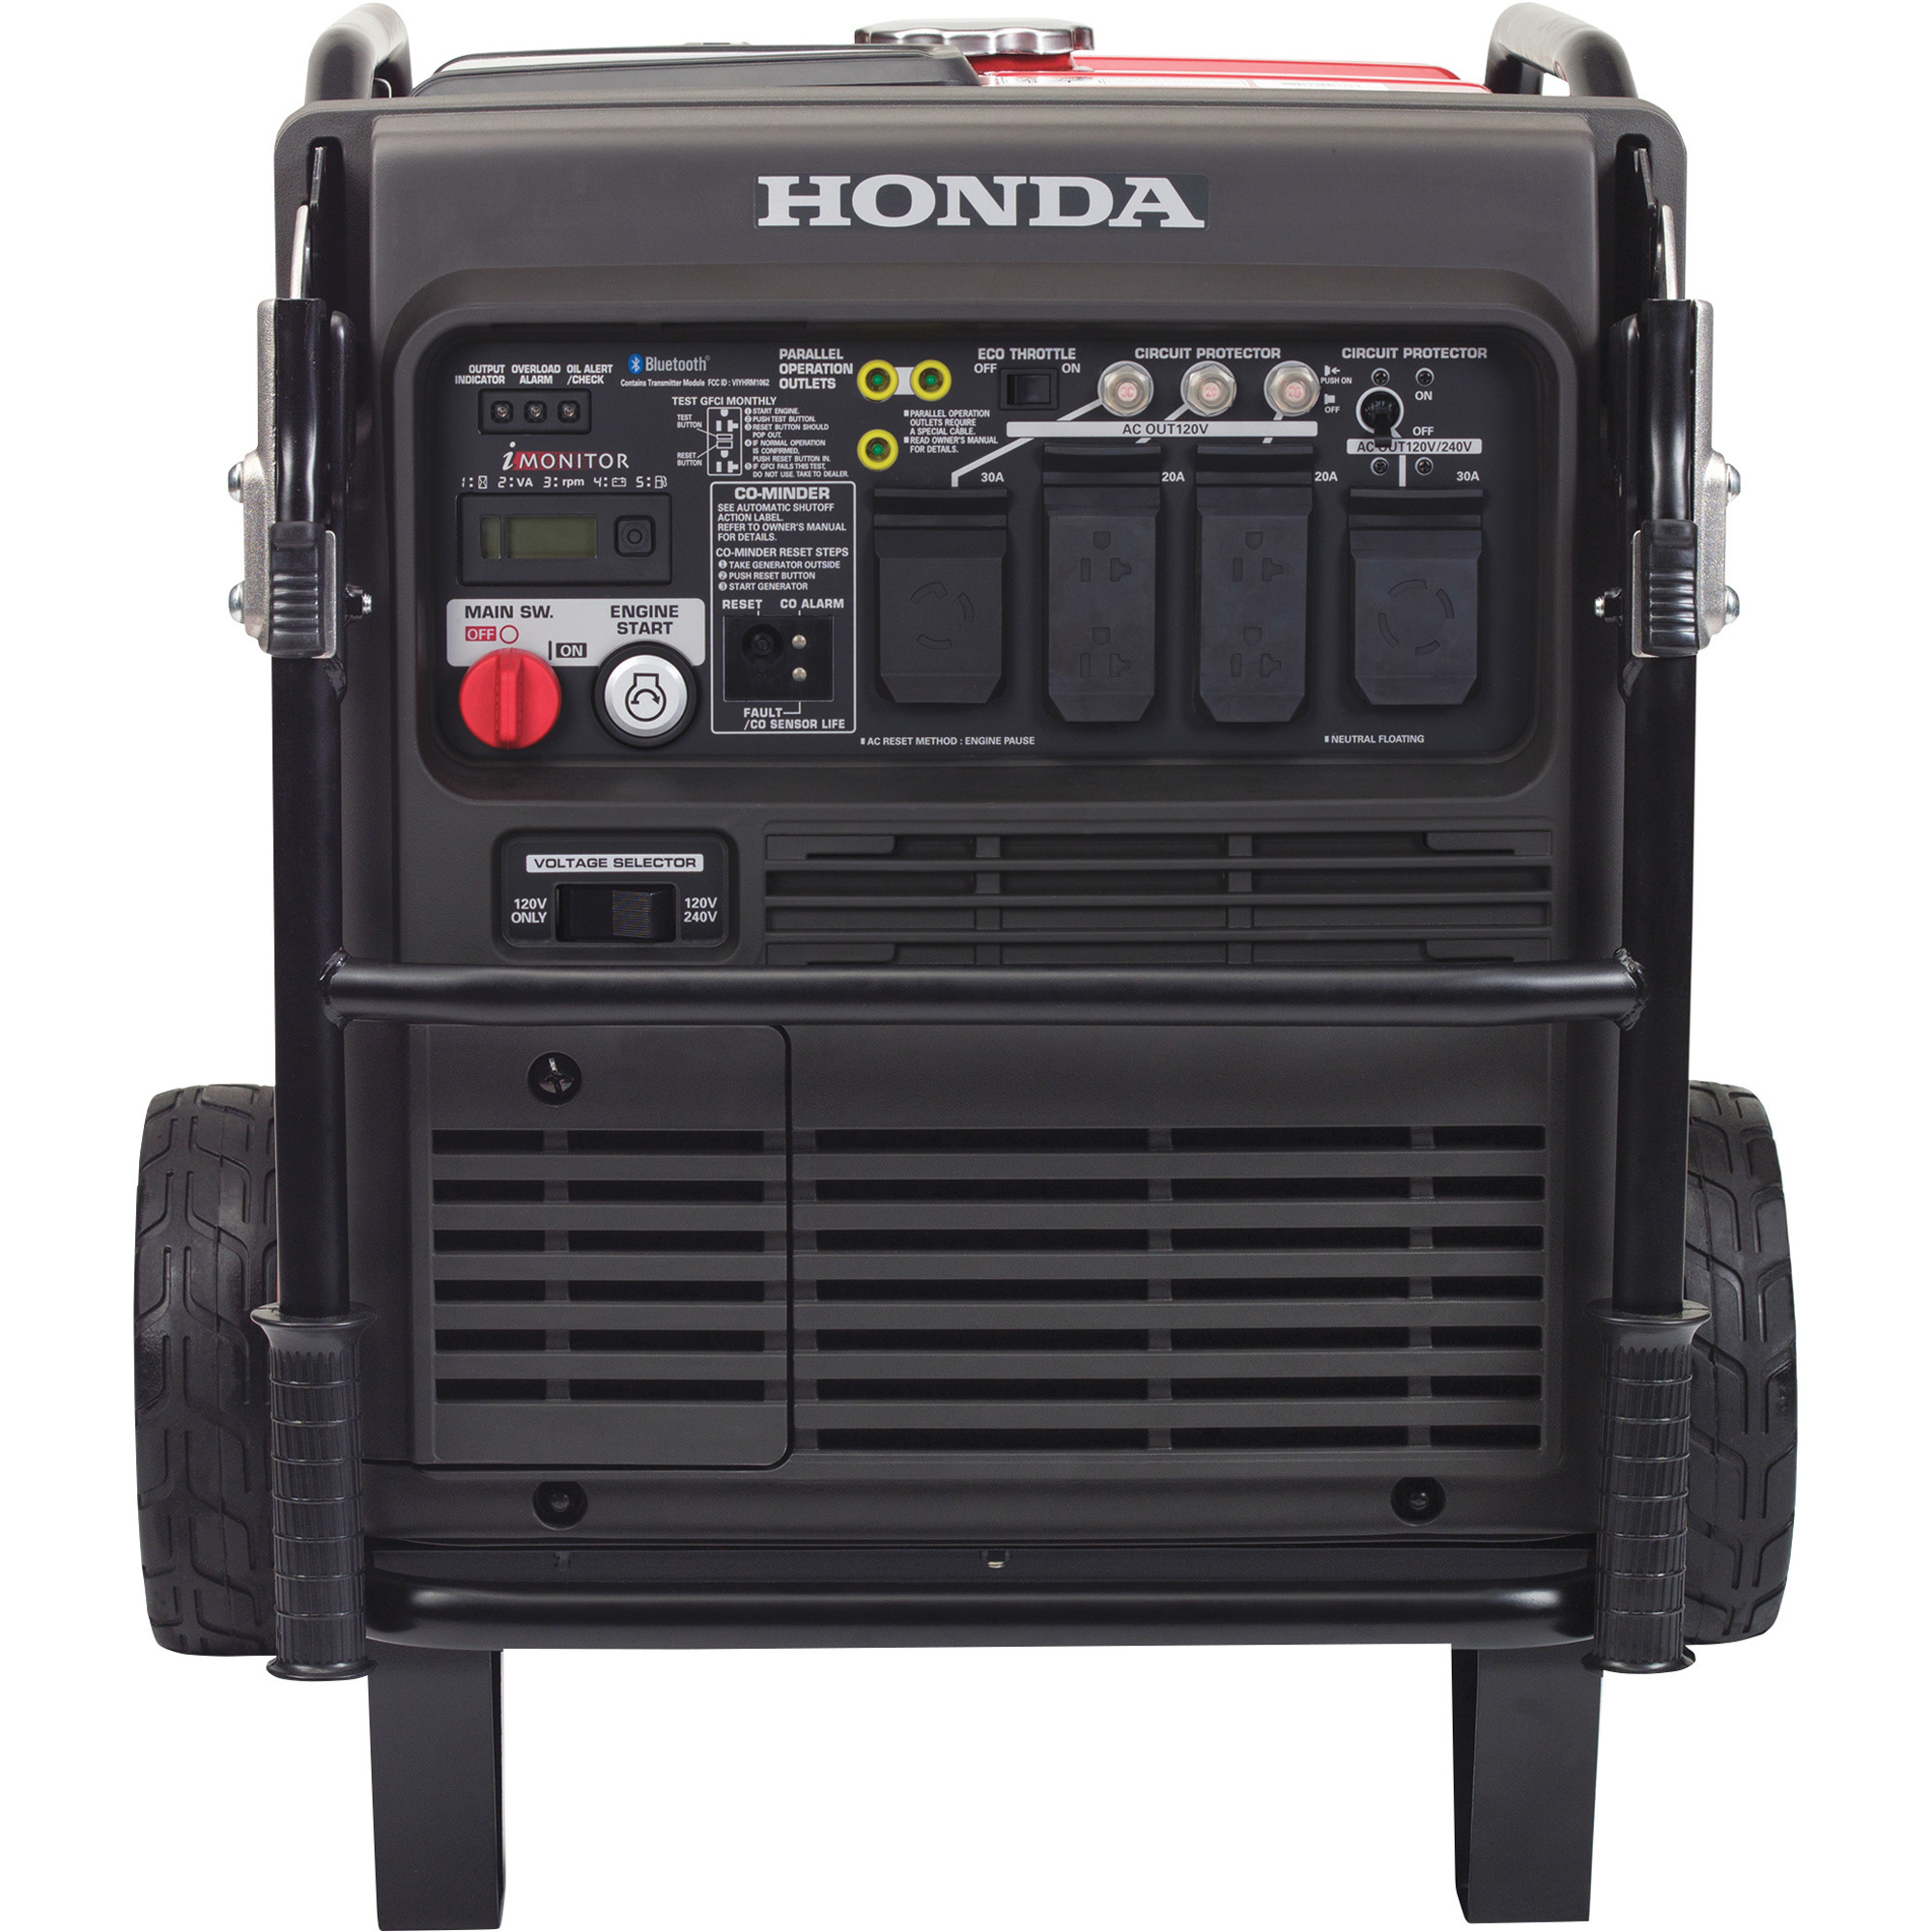 Honda Inverter Generator, 7000 Surge Watts, 5500 Rated Watts